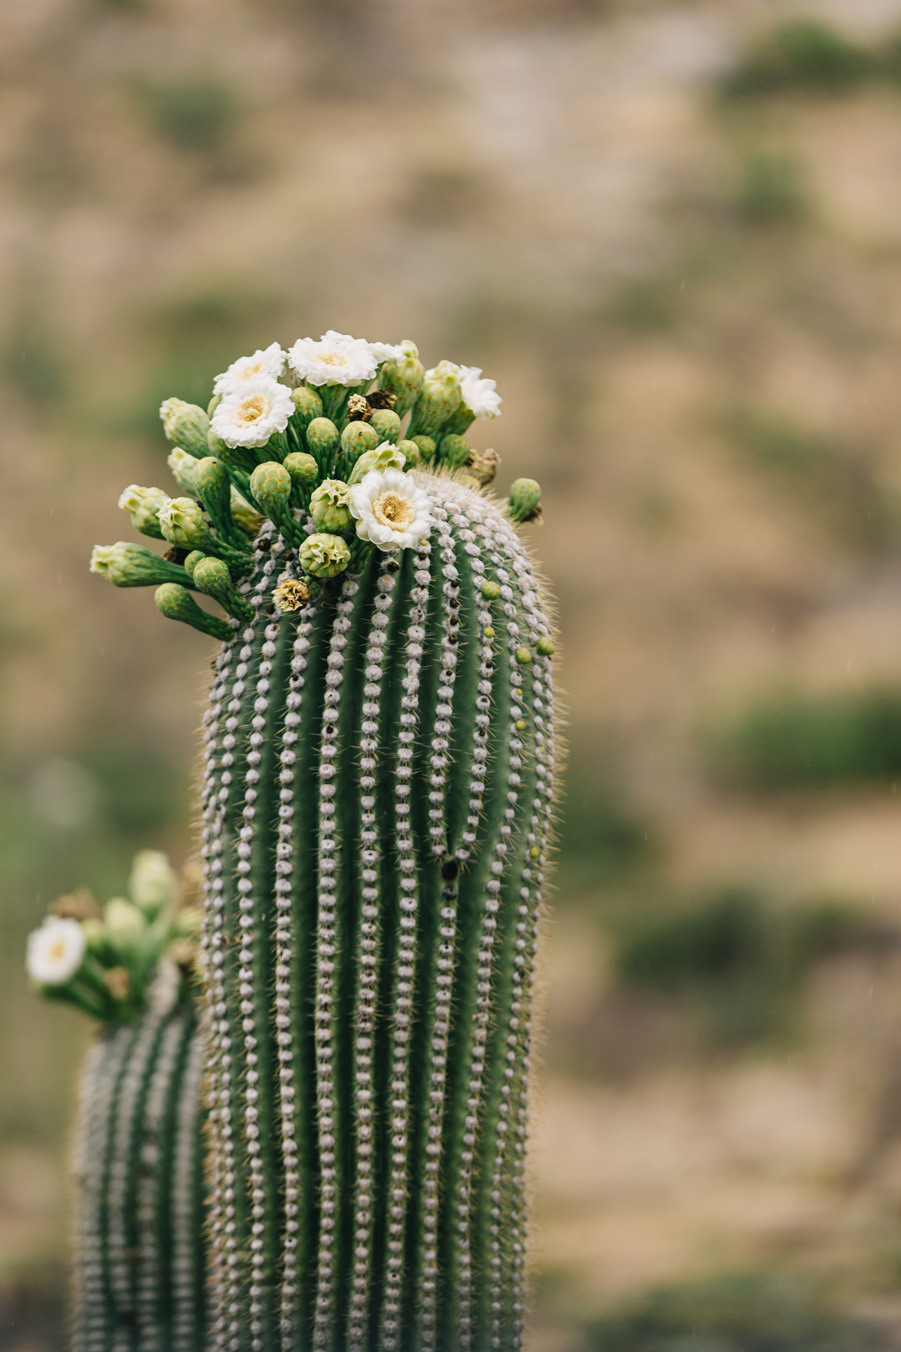 CindyGiovagnoli_Saguaro_National_Park_Arizona_desert_cactus_bloom_flowers-014.jpg